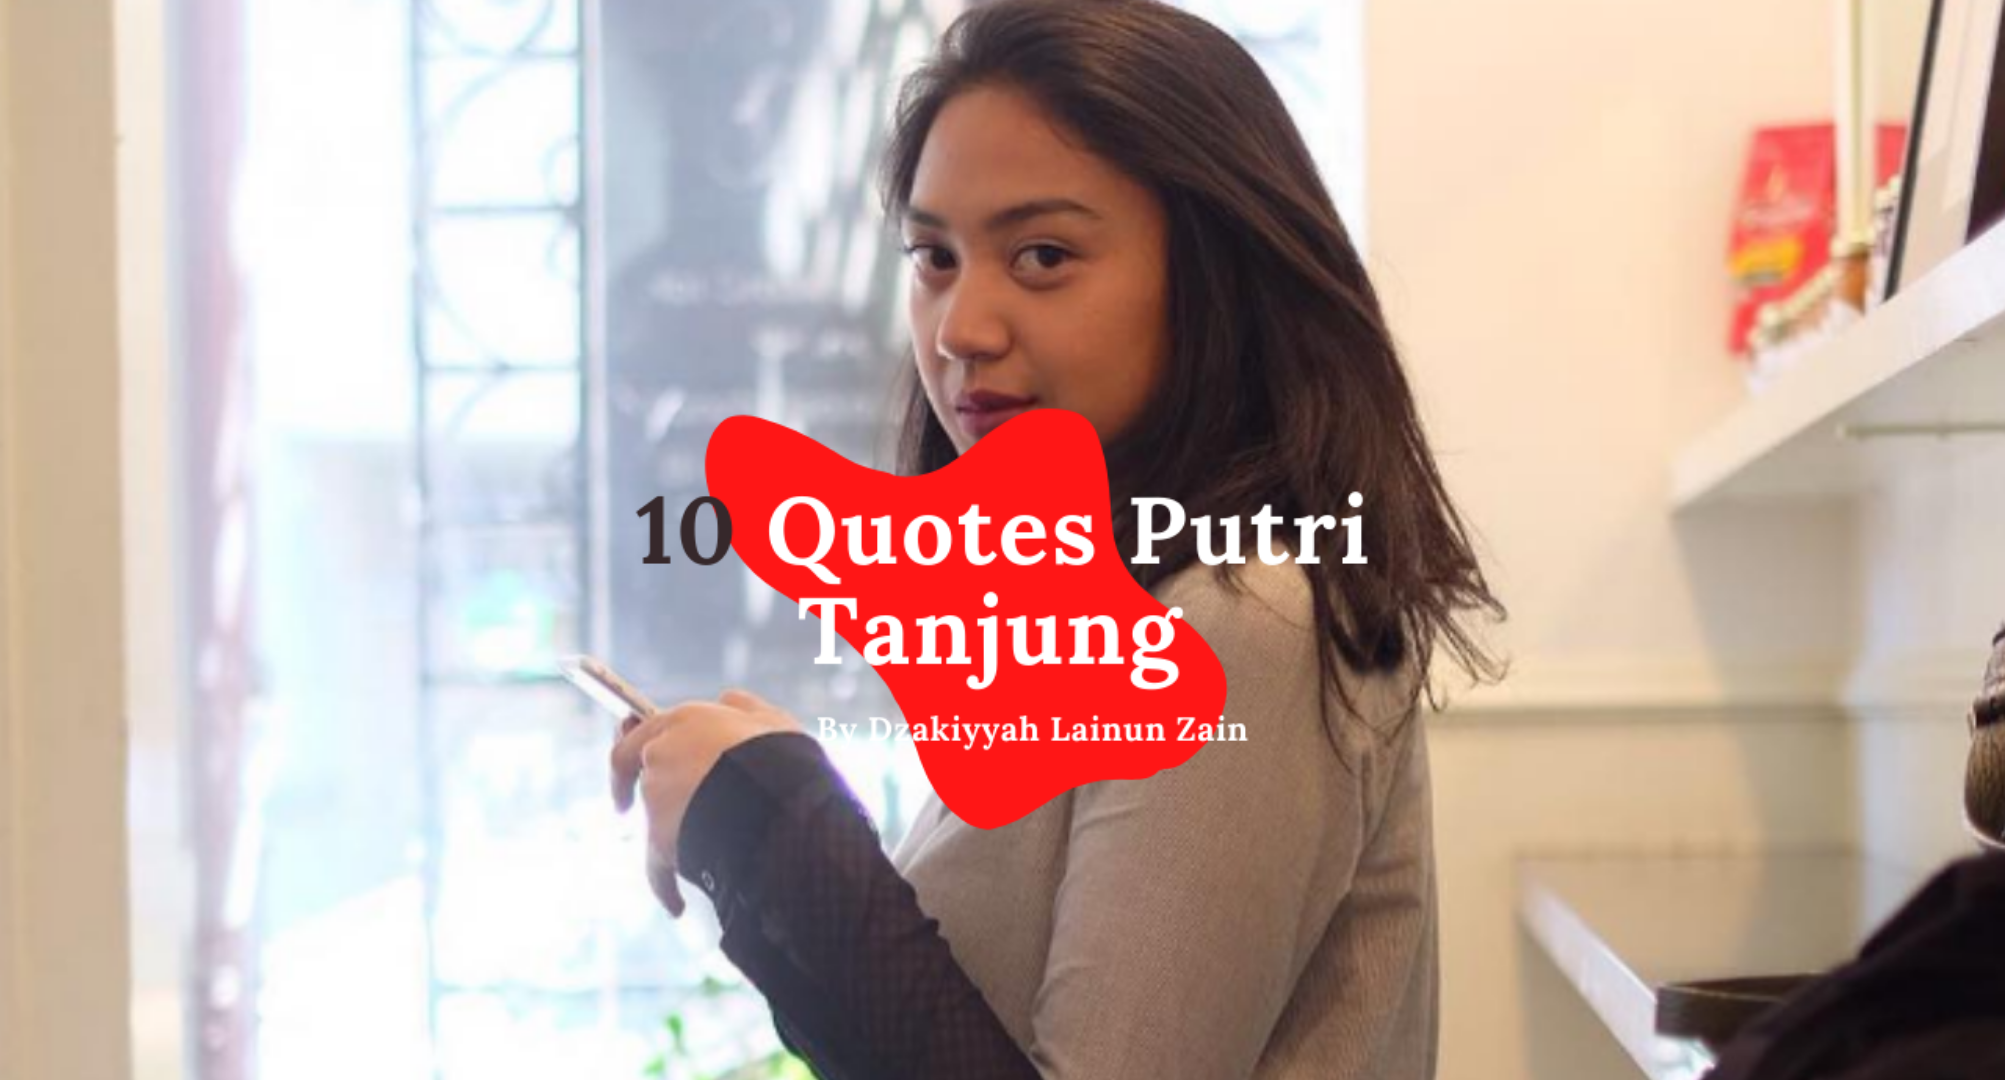 10 Quotes dari Putri Tanjung yang Bisa Jadi Inspirasi Millennials